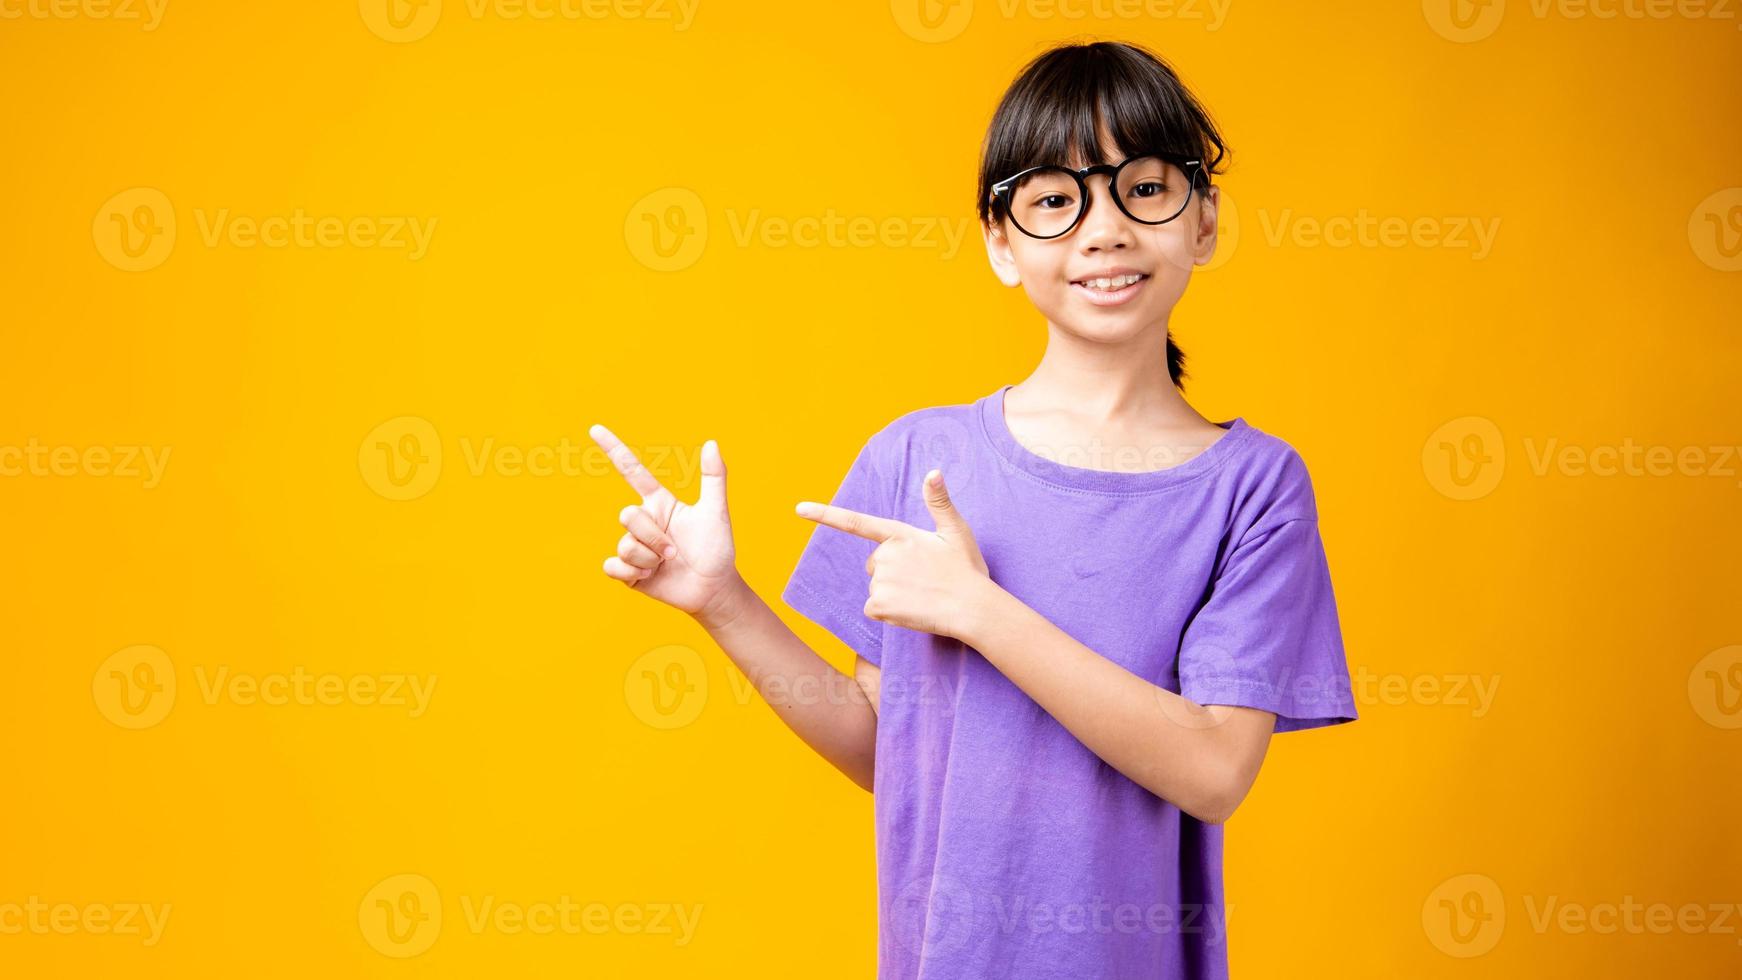 jong Aziatisch meisje in paars shirt en bril wijzend op kopie ruimte in studio met gele achtergrond foto